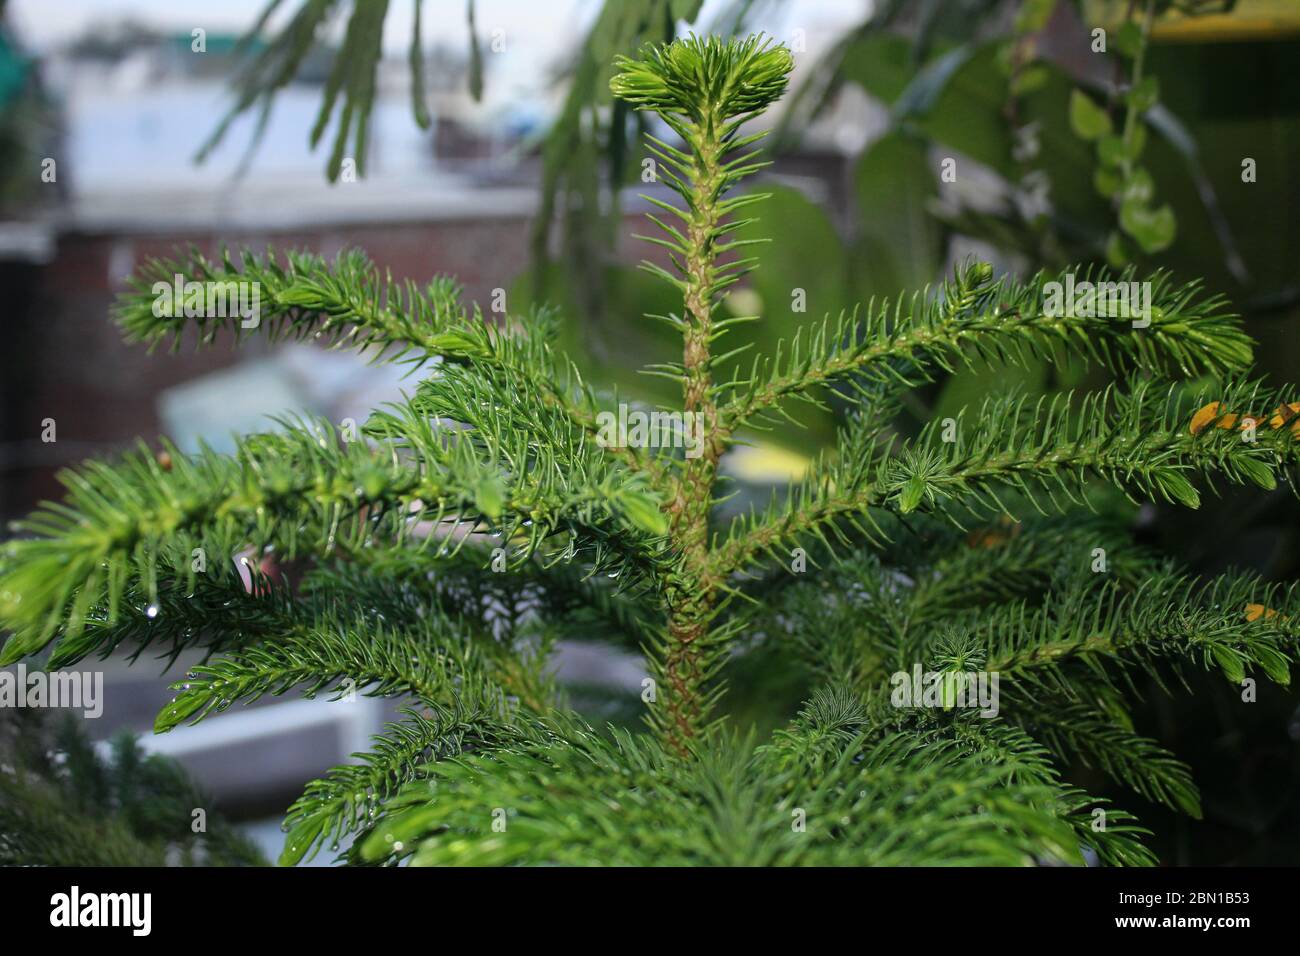 Arbre de Noël, Araucaria heterophylla, pin de l'île Norfolk, implique la croissance naturelle dans un jardin biologique. Banque D'Images